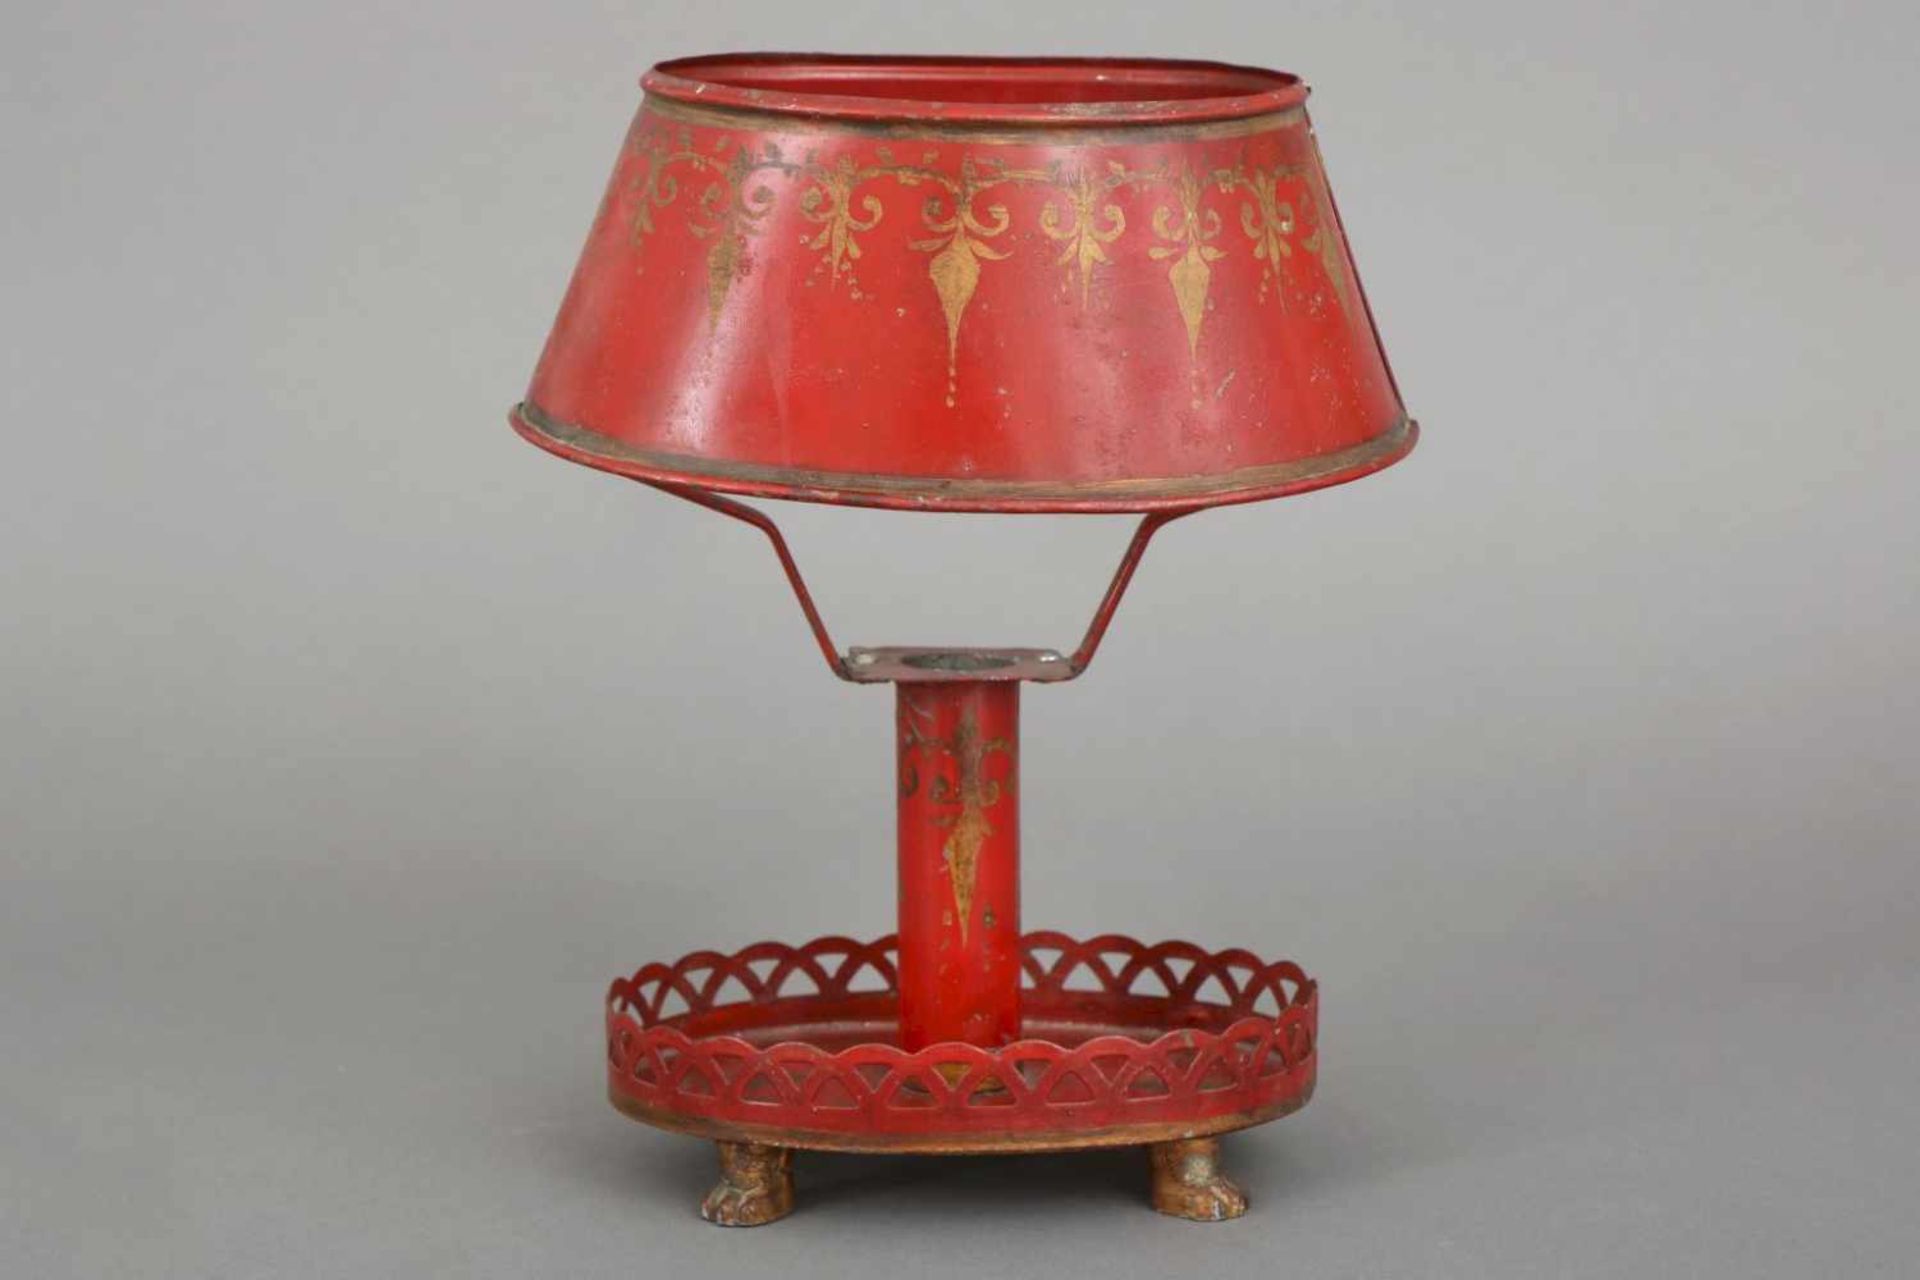 Bouillotte Tischlampe des 19. JahrhundertsBlech, rot lackiert, goldenes Schablonendekor, ovaler,